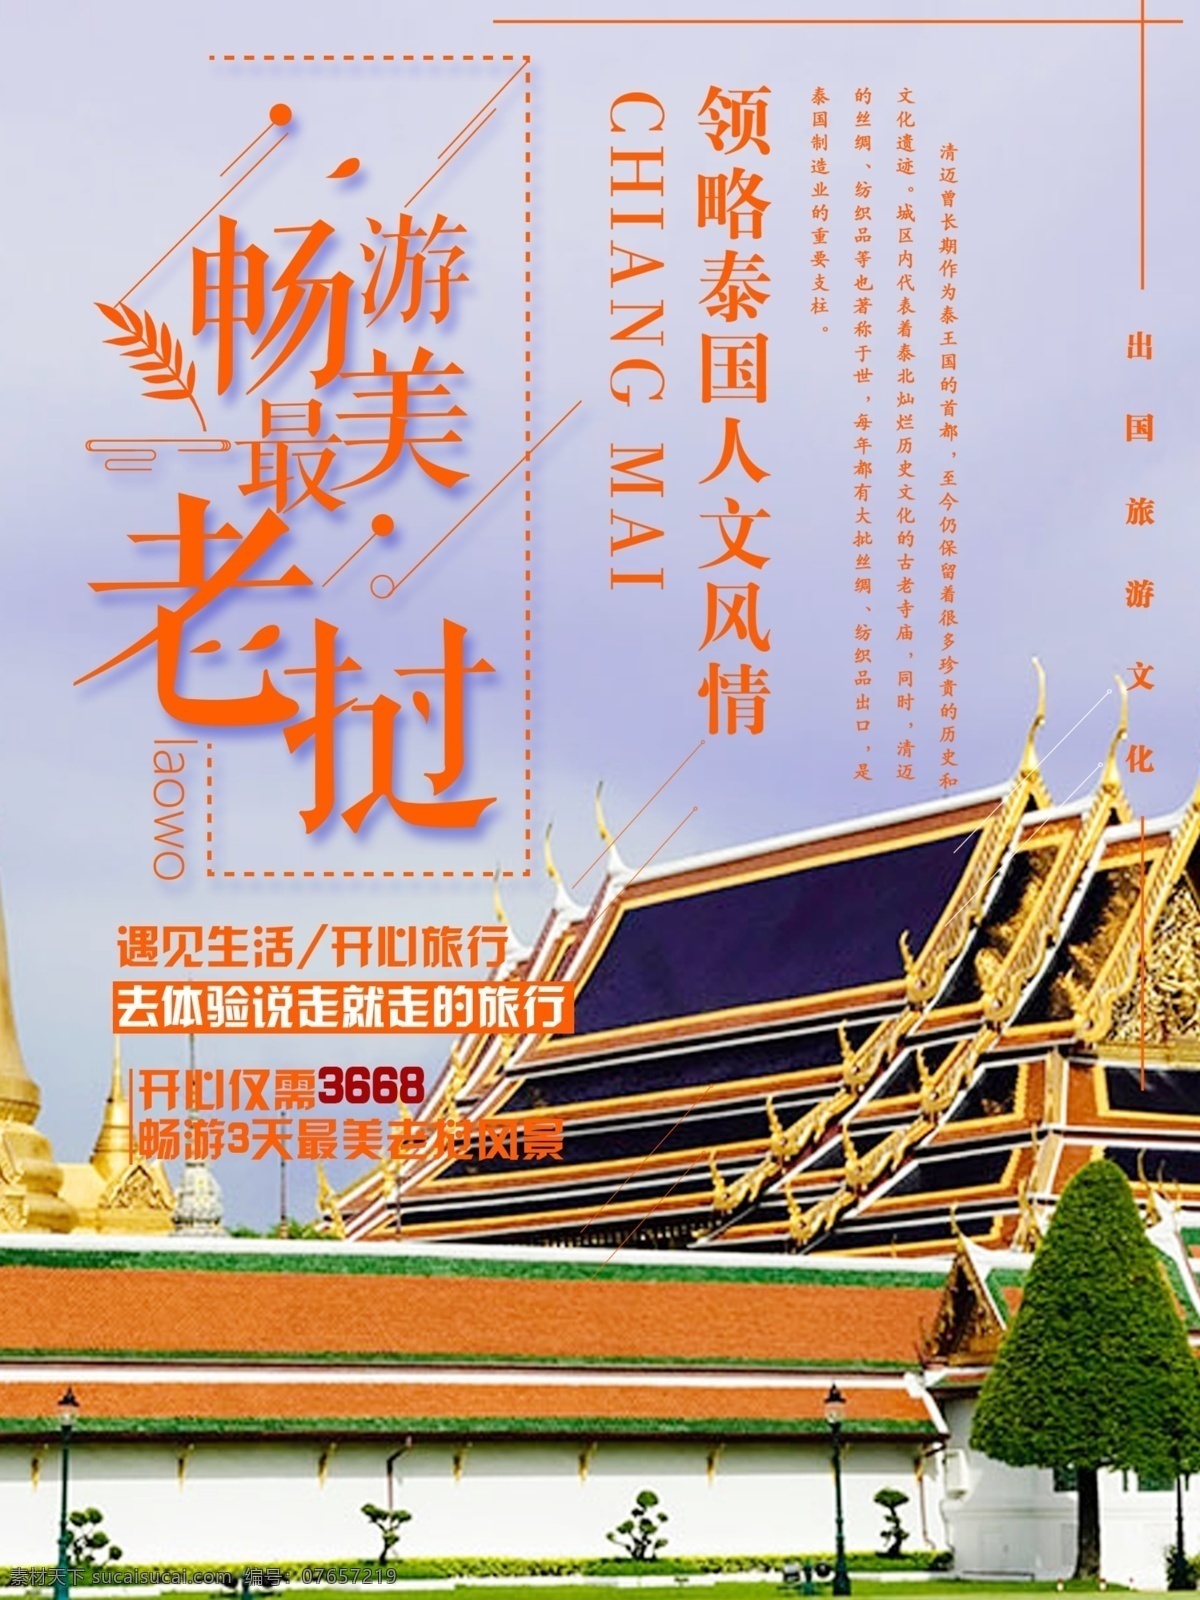 夏日 泰国 老挝 旅游 橘 色 建筑 简约 商业 橘色 海报